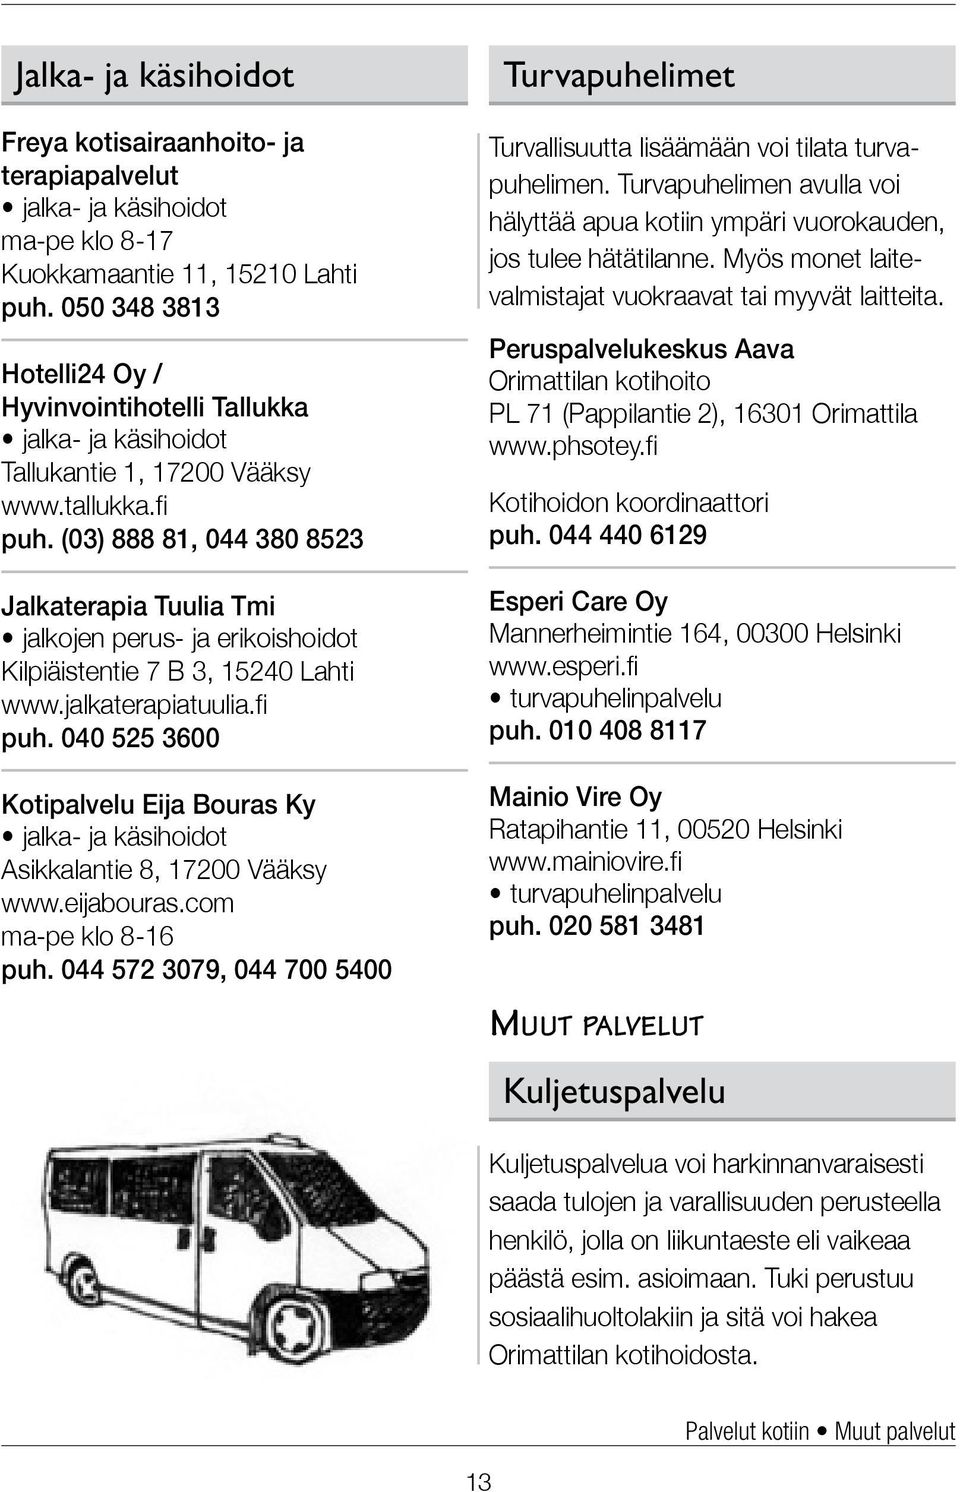 (03) 888 81, 044 380 8523 Jalkaterapia Tuulia Tmi jalkojen perus- ja erikoishoidot Kilpiäistentie 7 B 3, 15240 Lahti www.jalkaterapiatuulia.fi puh.